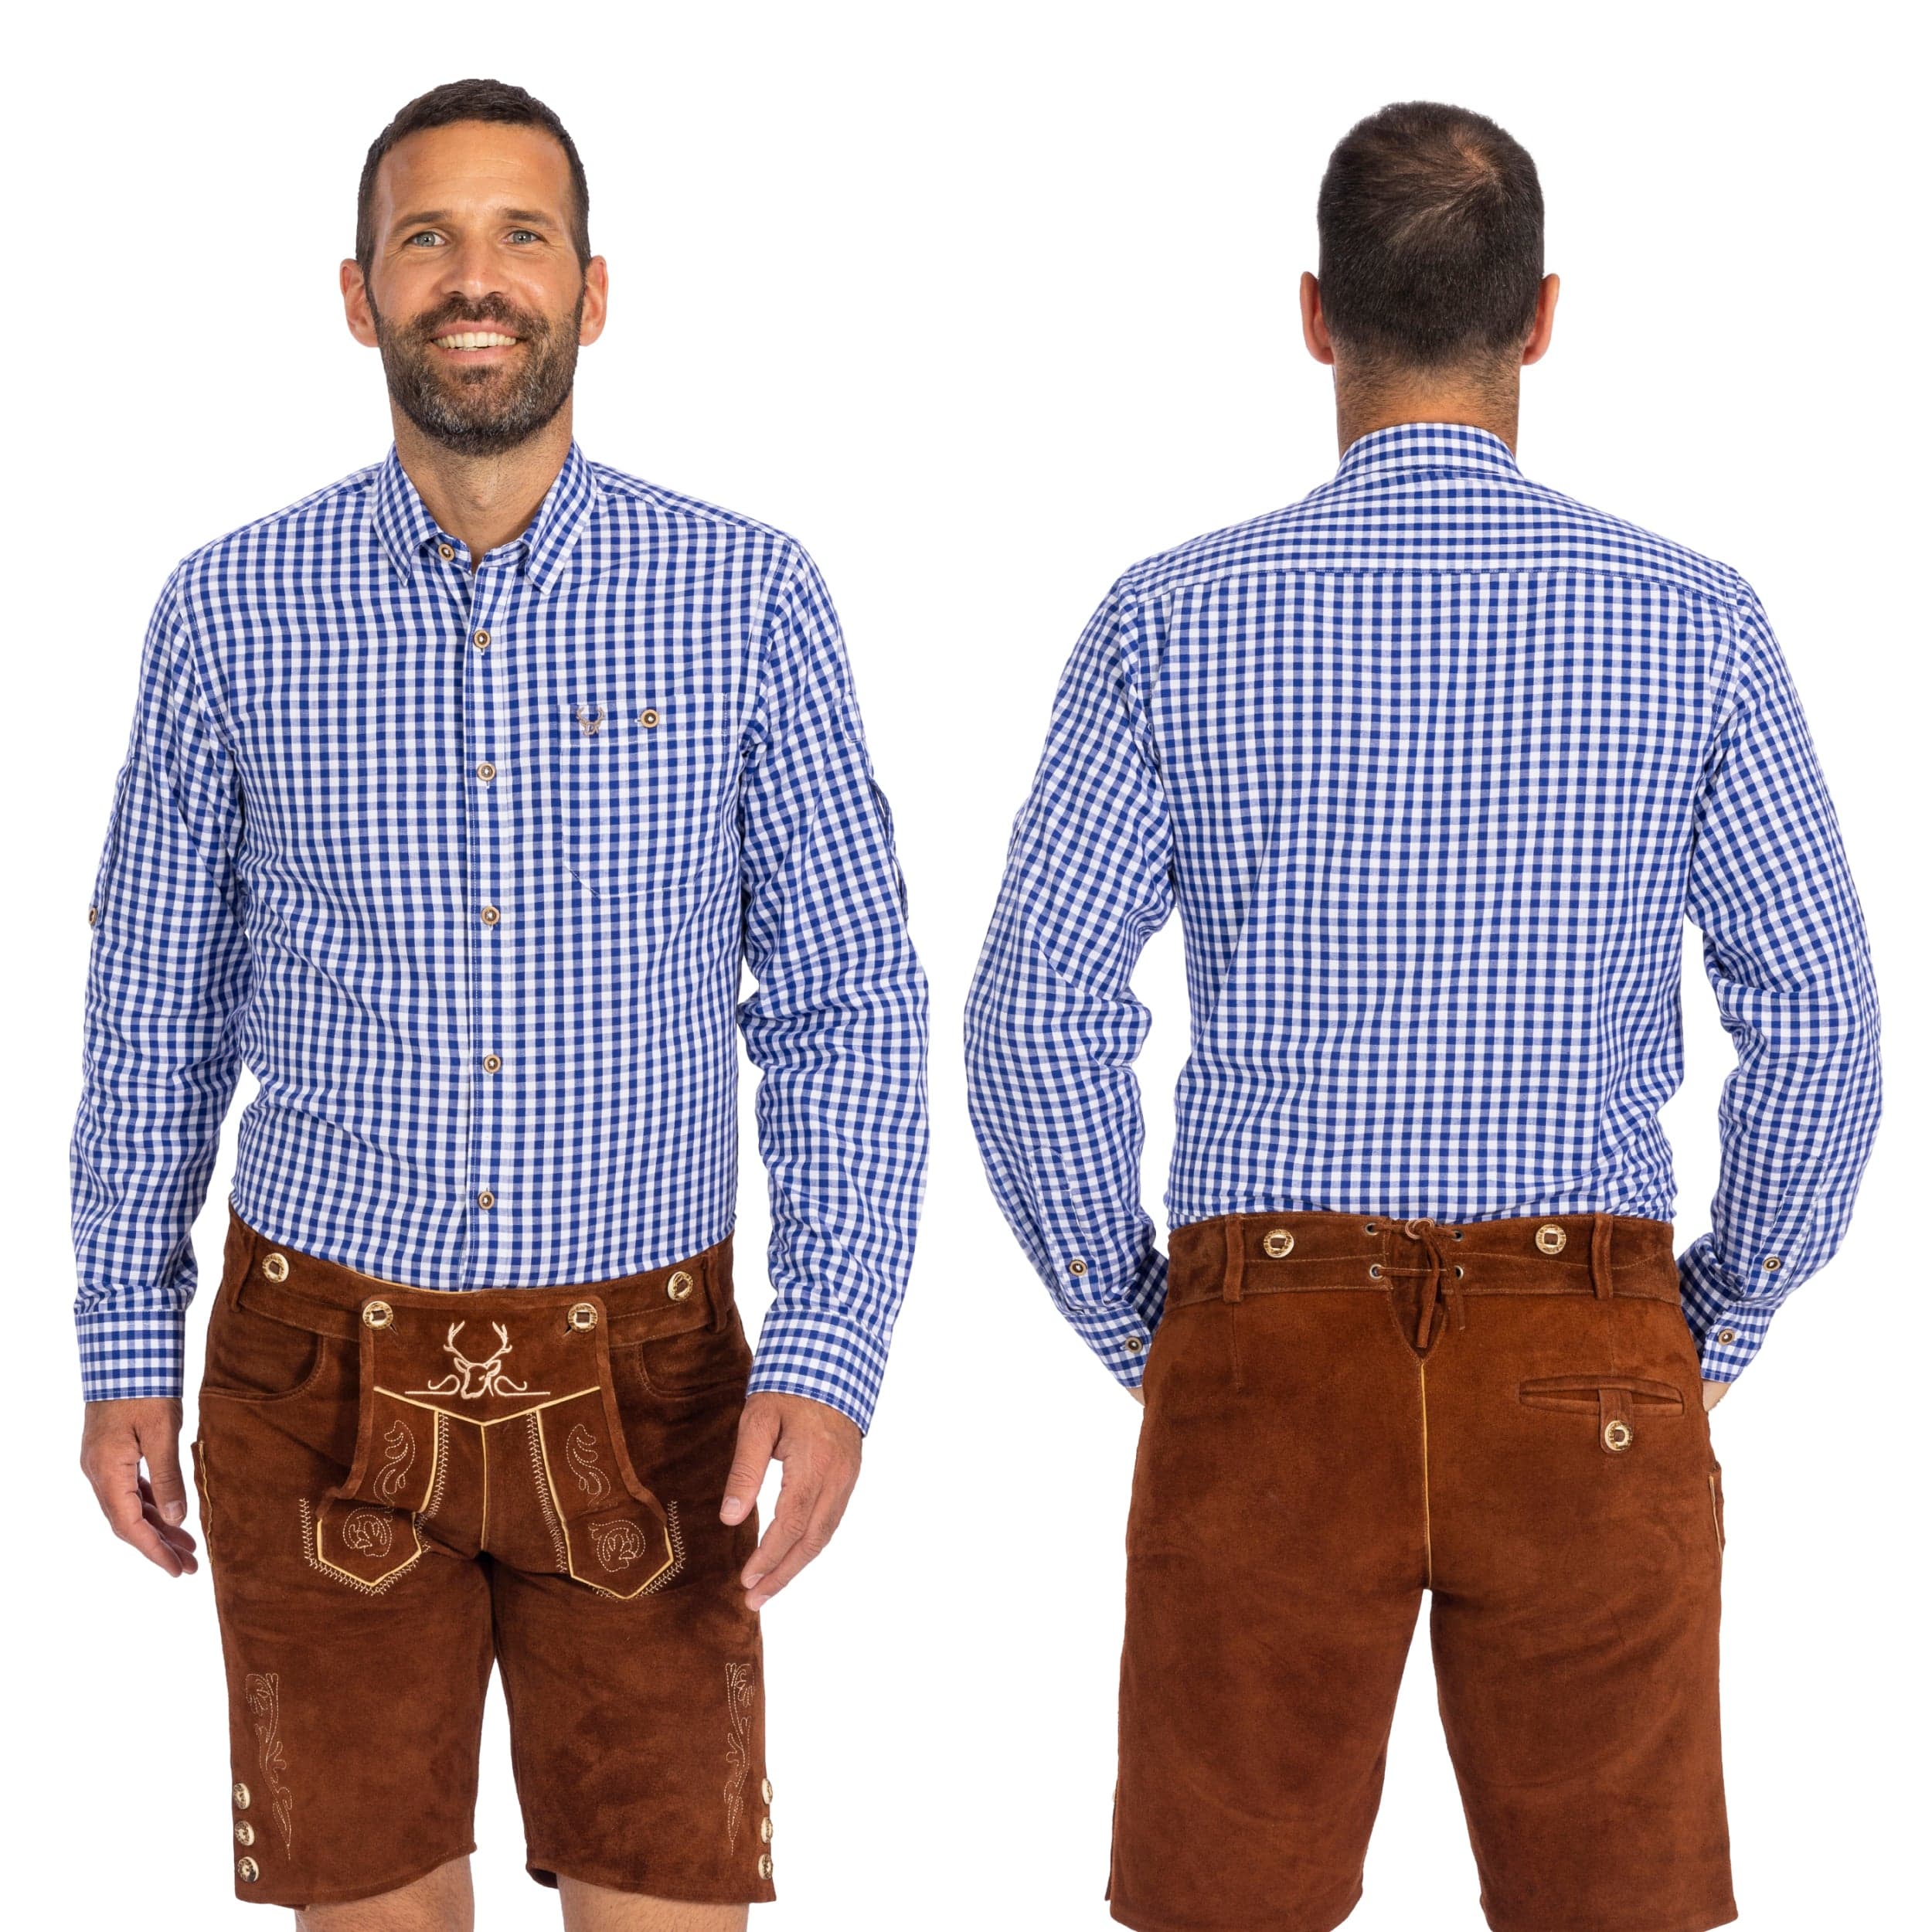 Bavaria Trachten Shirt Men Classic Checkered Blue Oktoberfest 